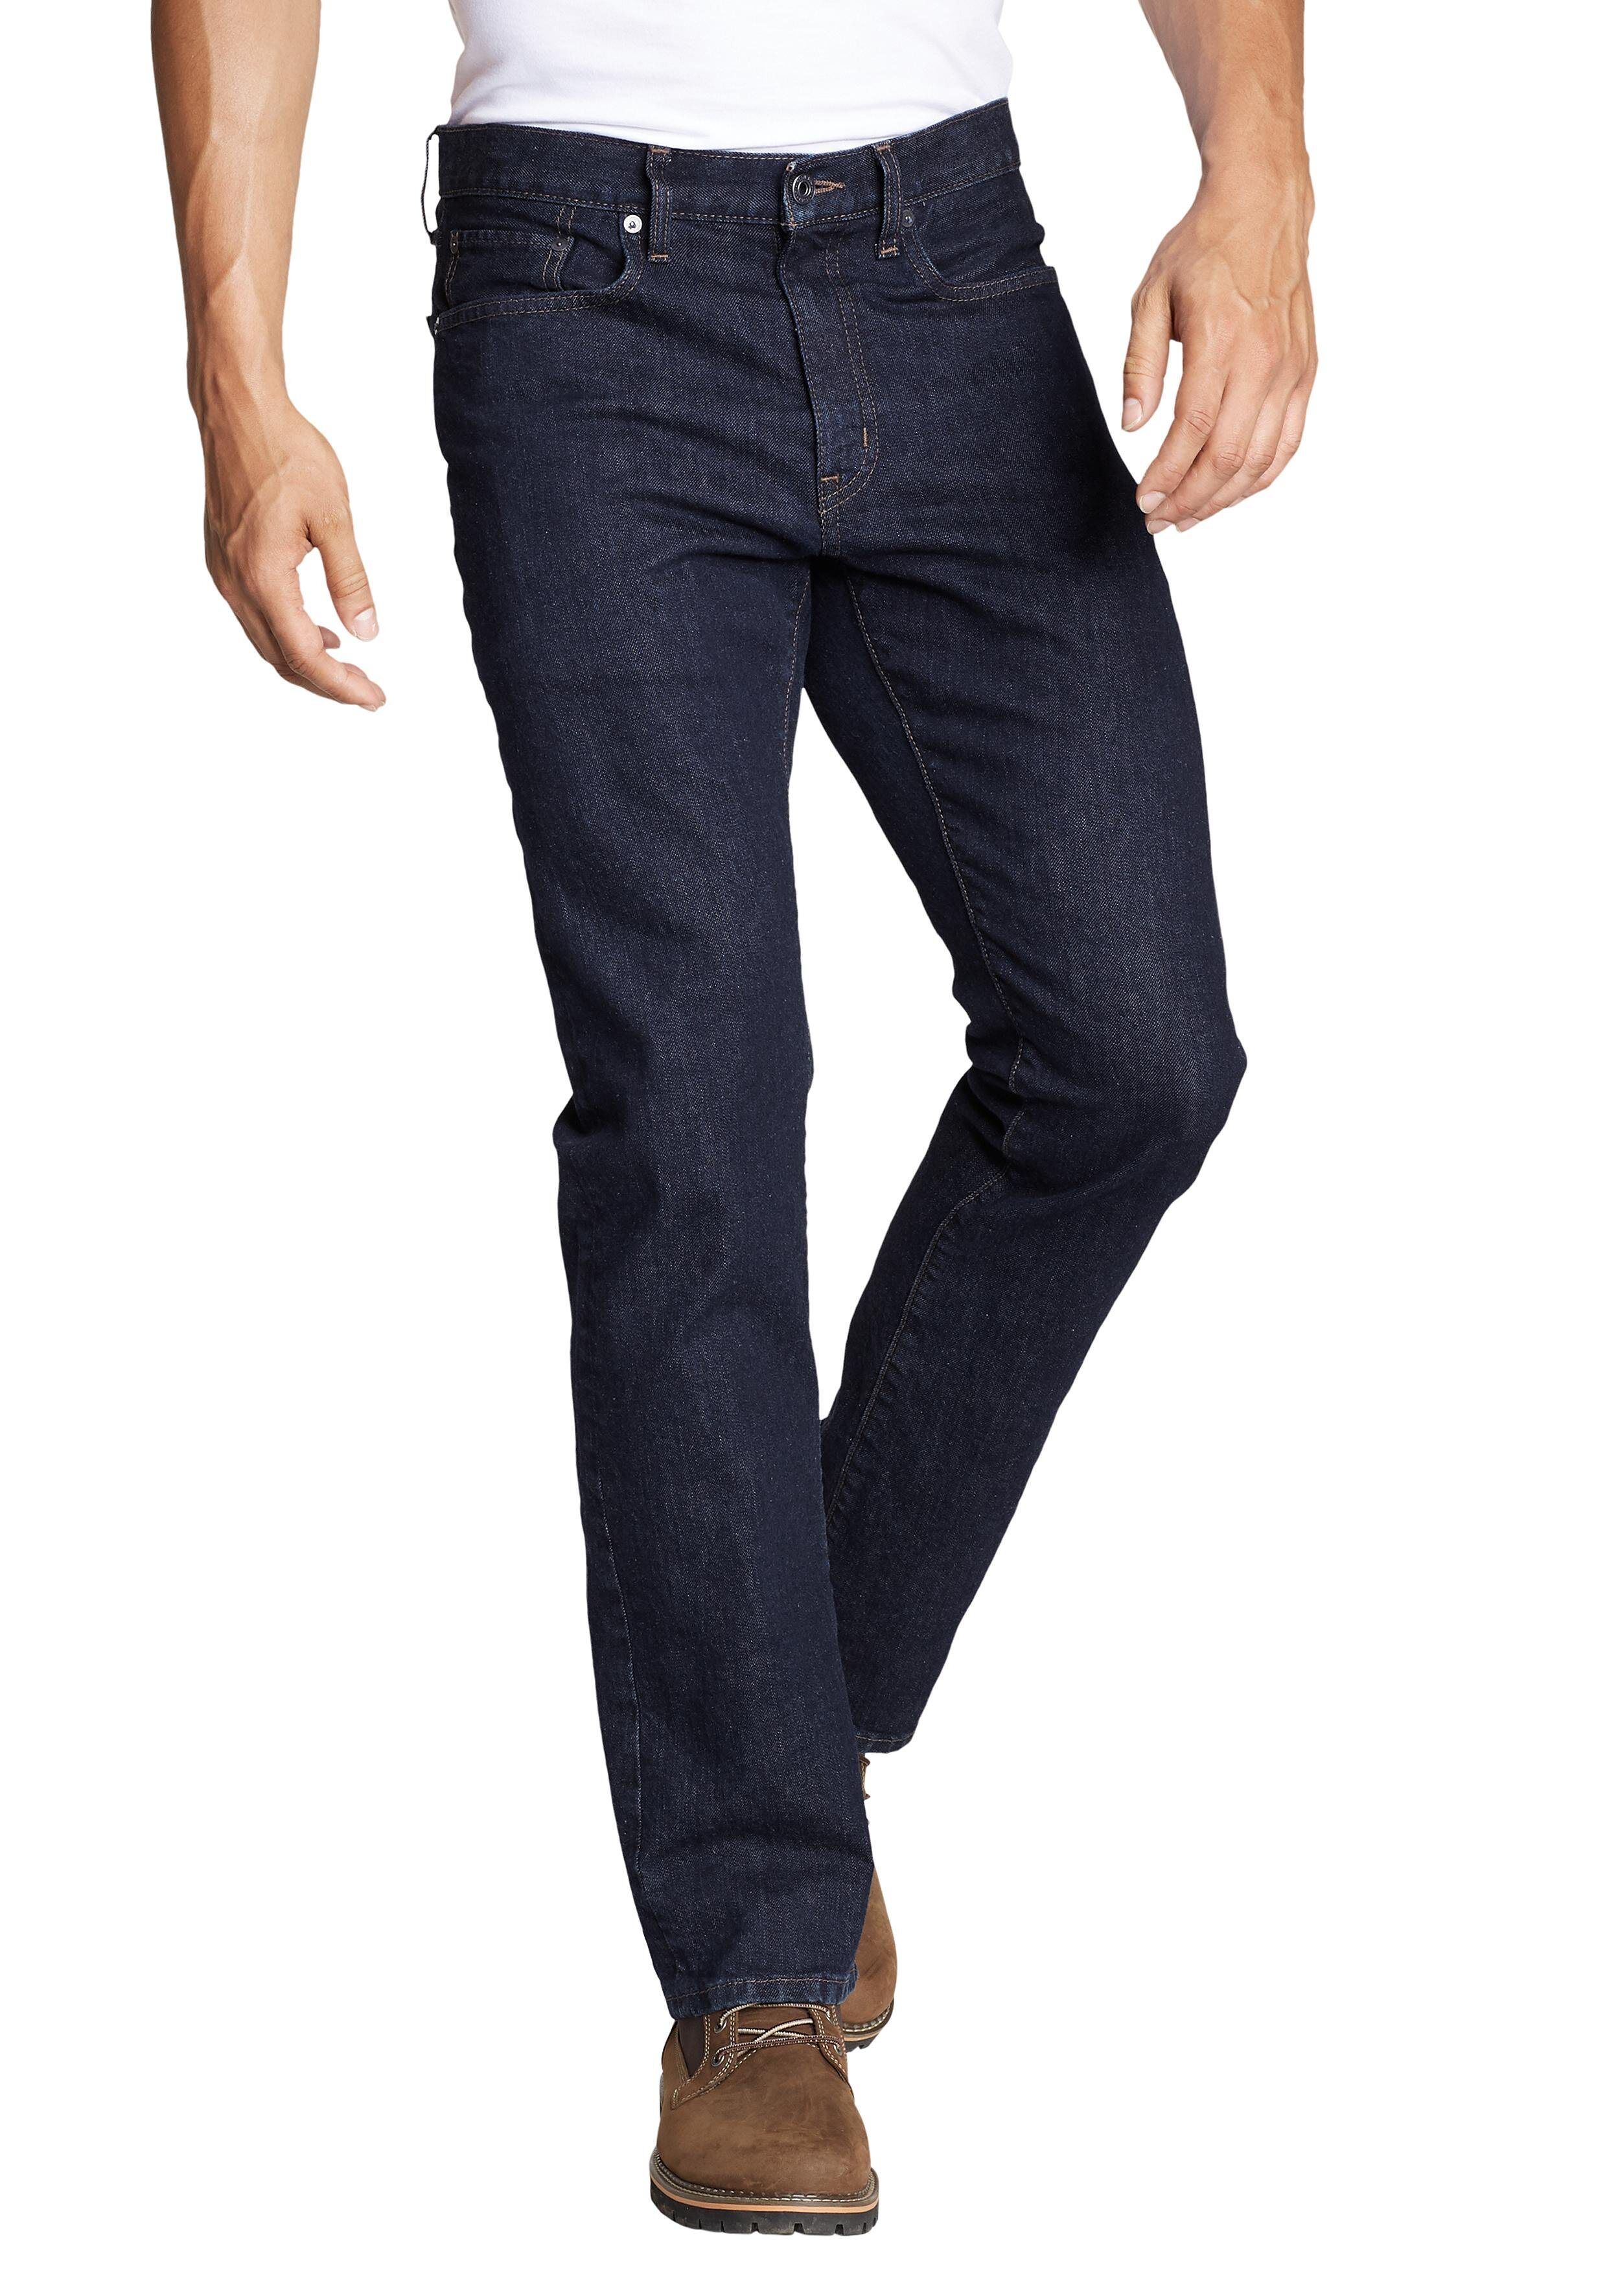 Eddie Bauer 5-Pocket-Jeans Flex - Straight Fit, dunkelblau